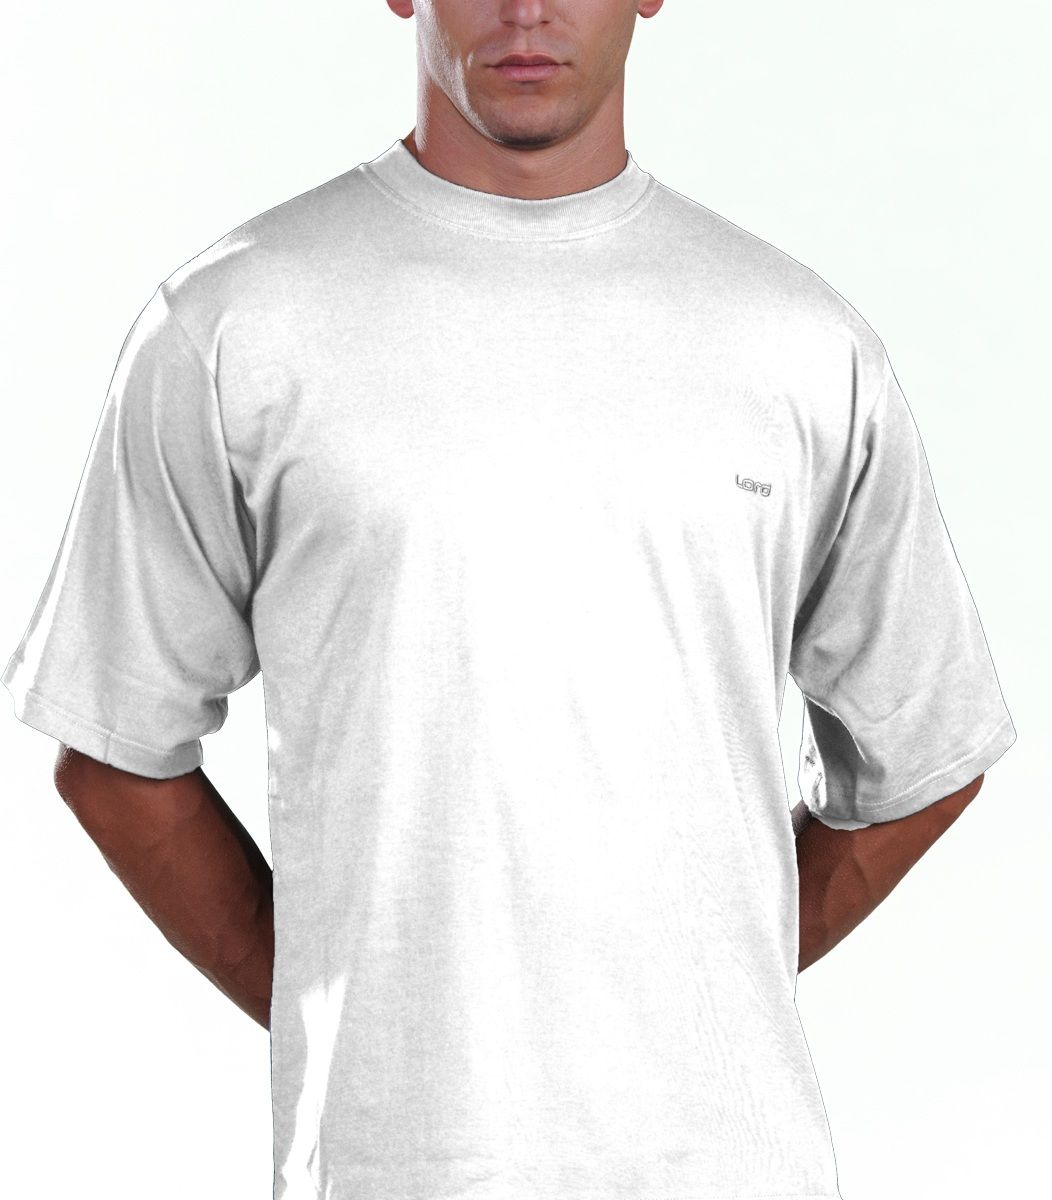 T-Shirt, Small-Medium